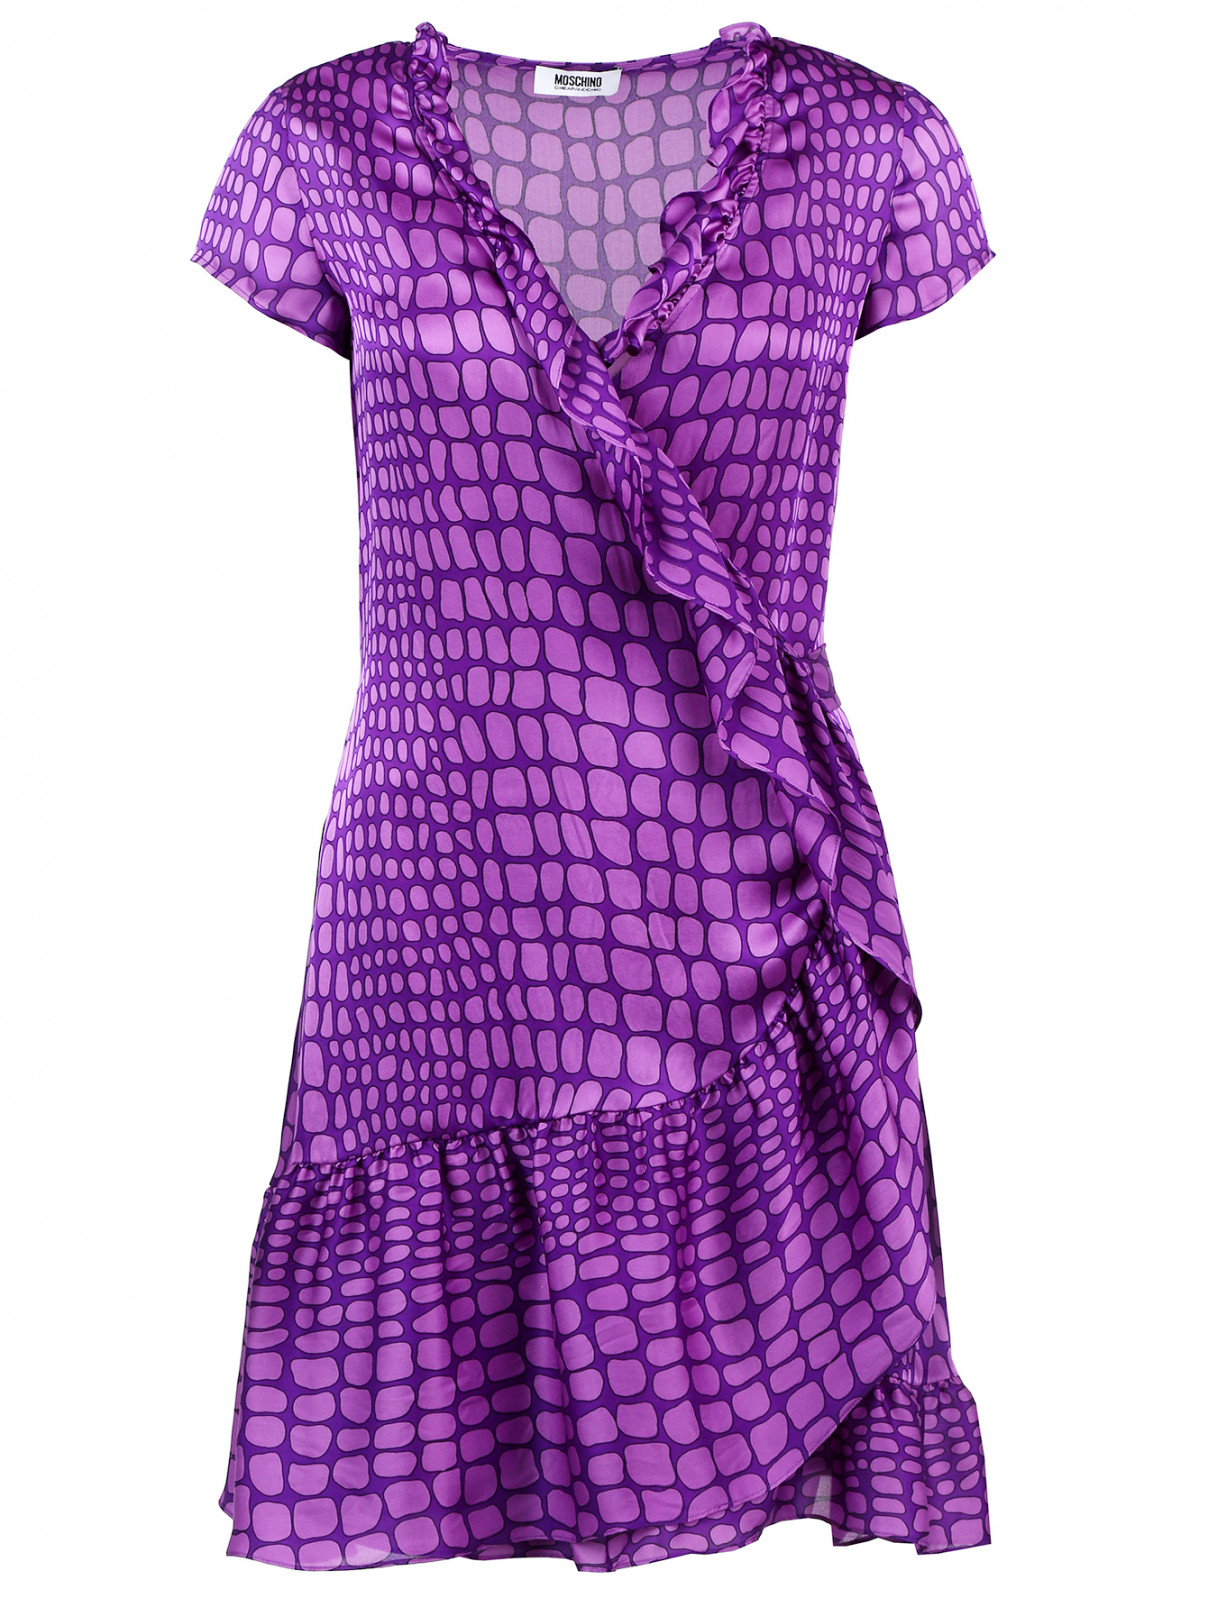 Шелковое платье с принтом Moschino Cheap&Chic  –  Общий вид  – Цвет:  Узор